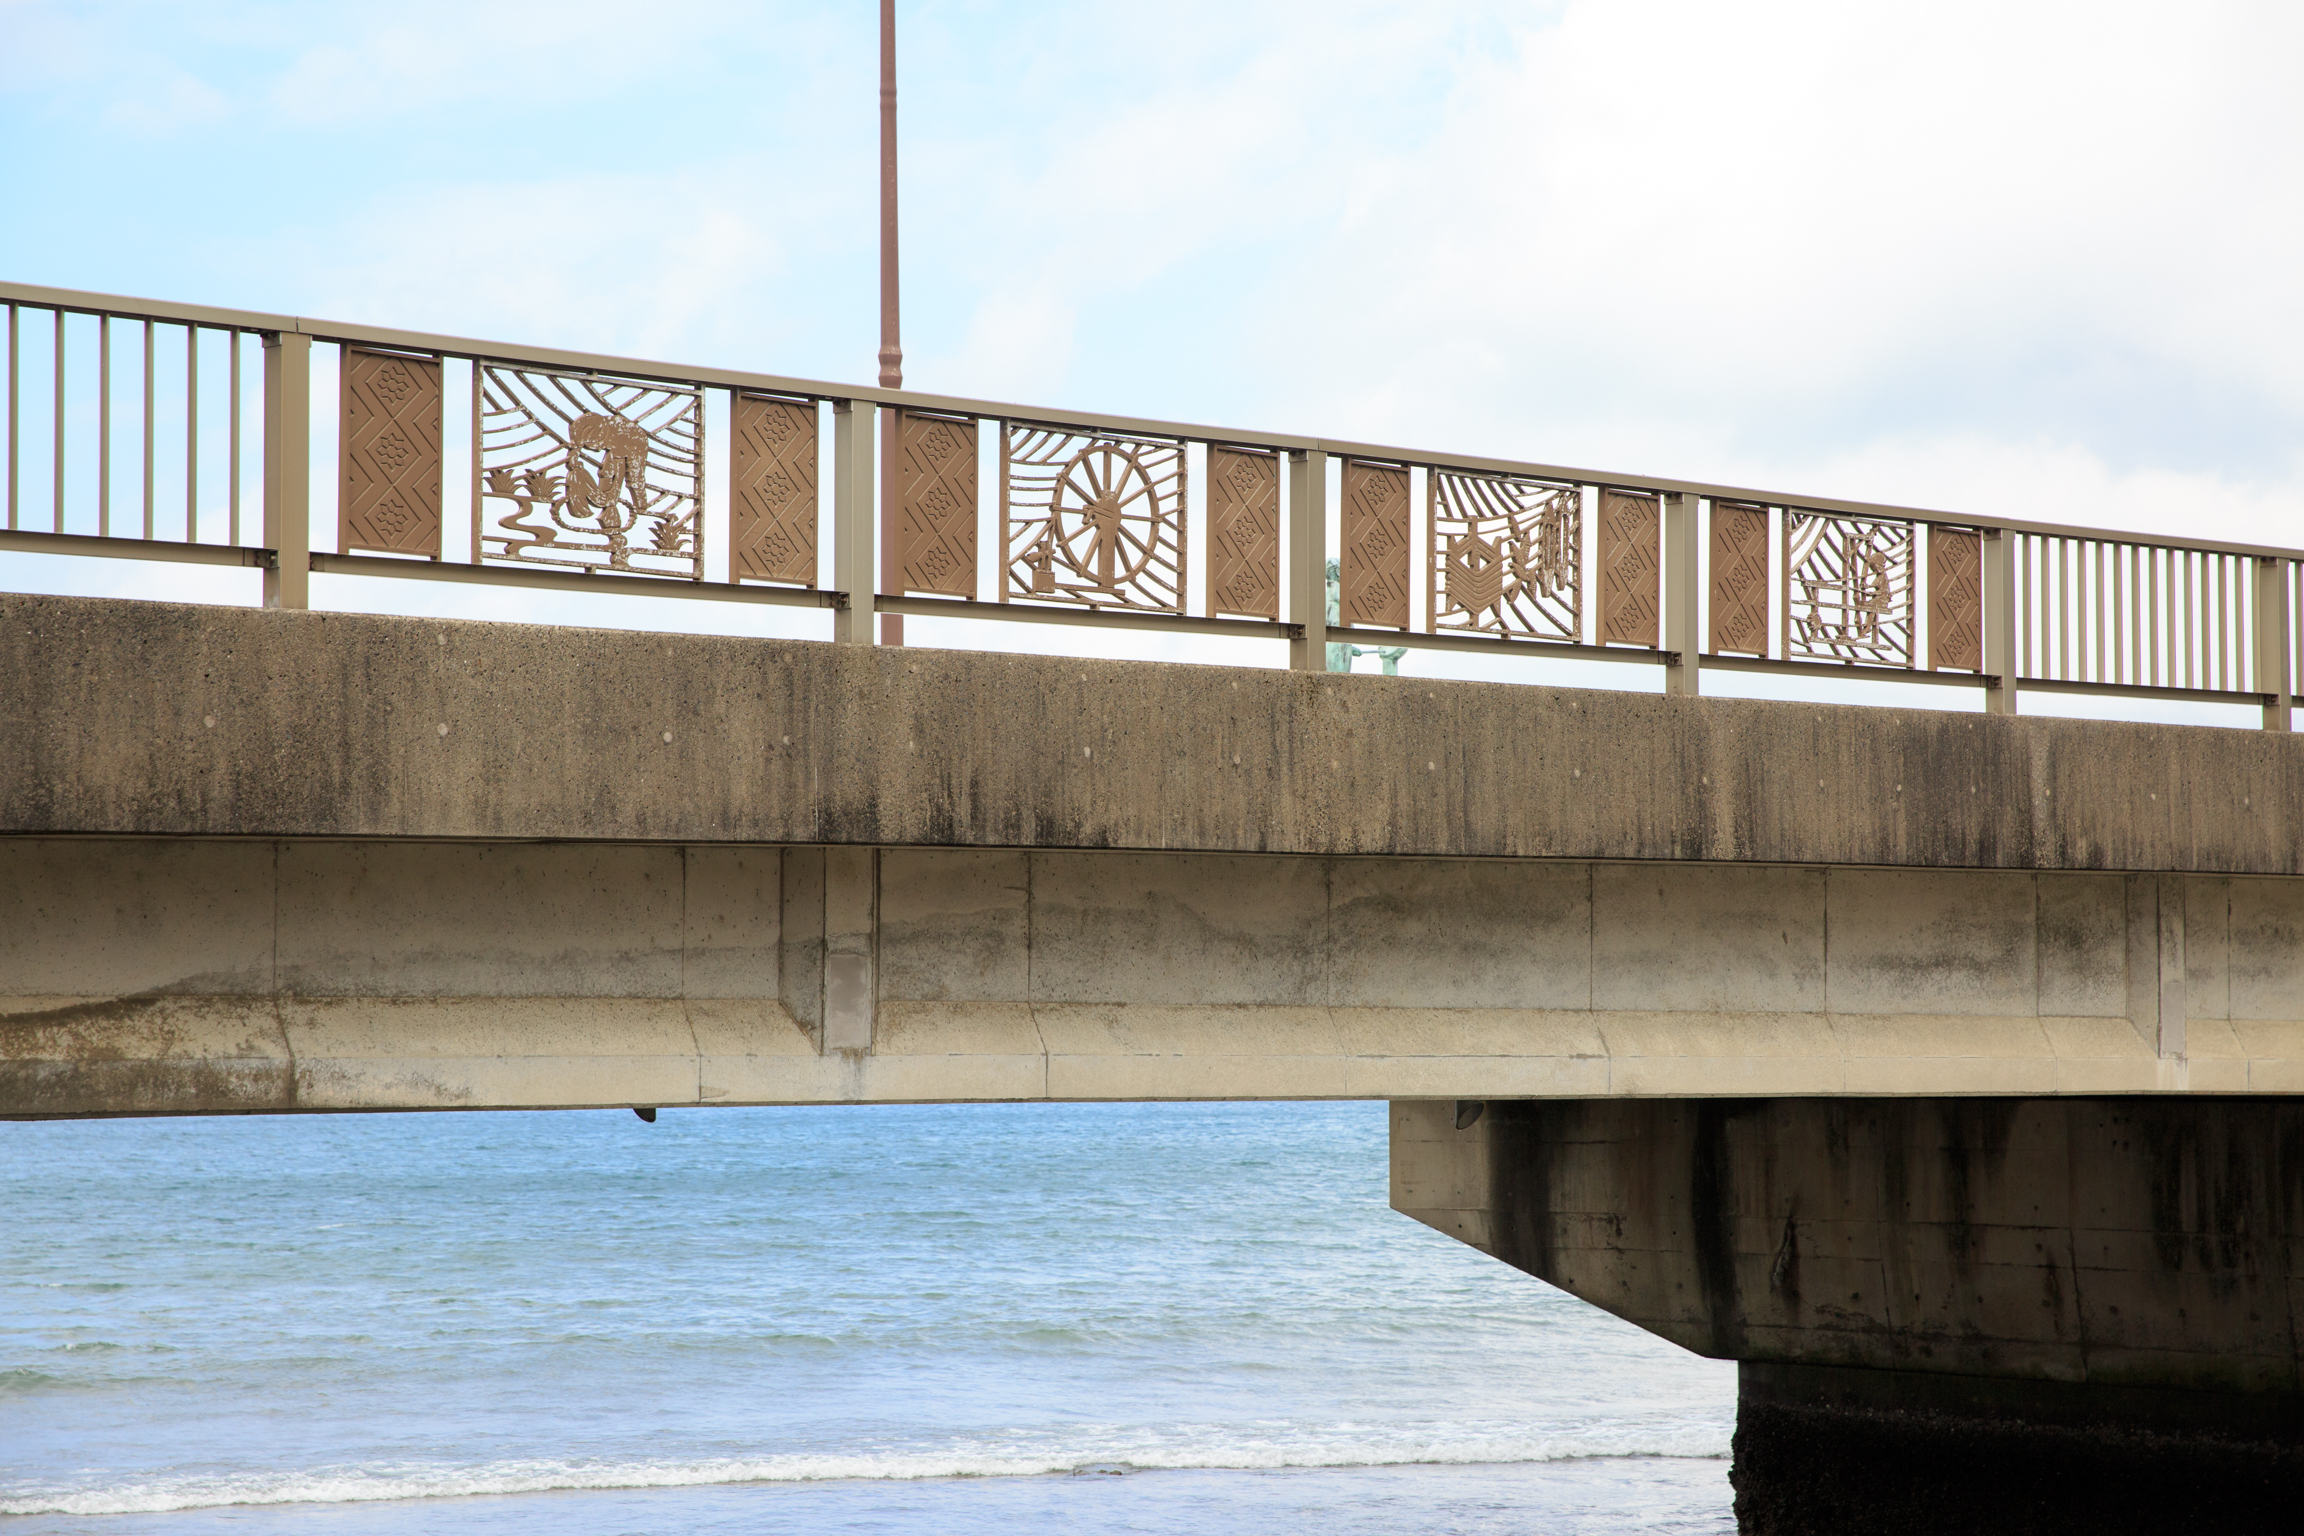 奄美名瀬港近くの橋の柵は大島紬関連のデザイン